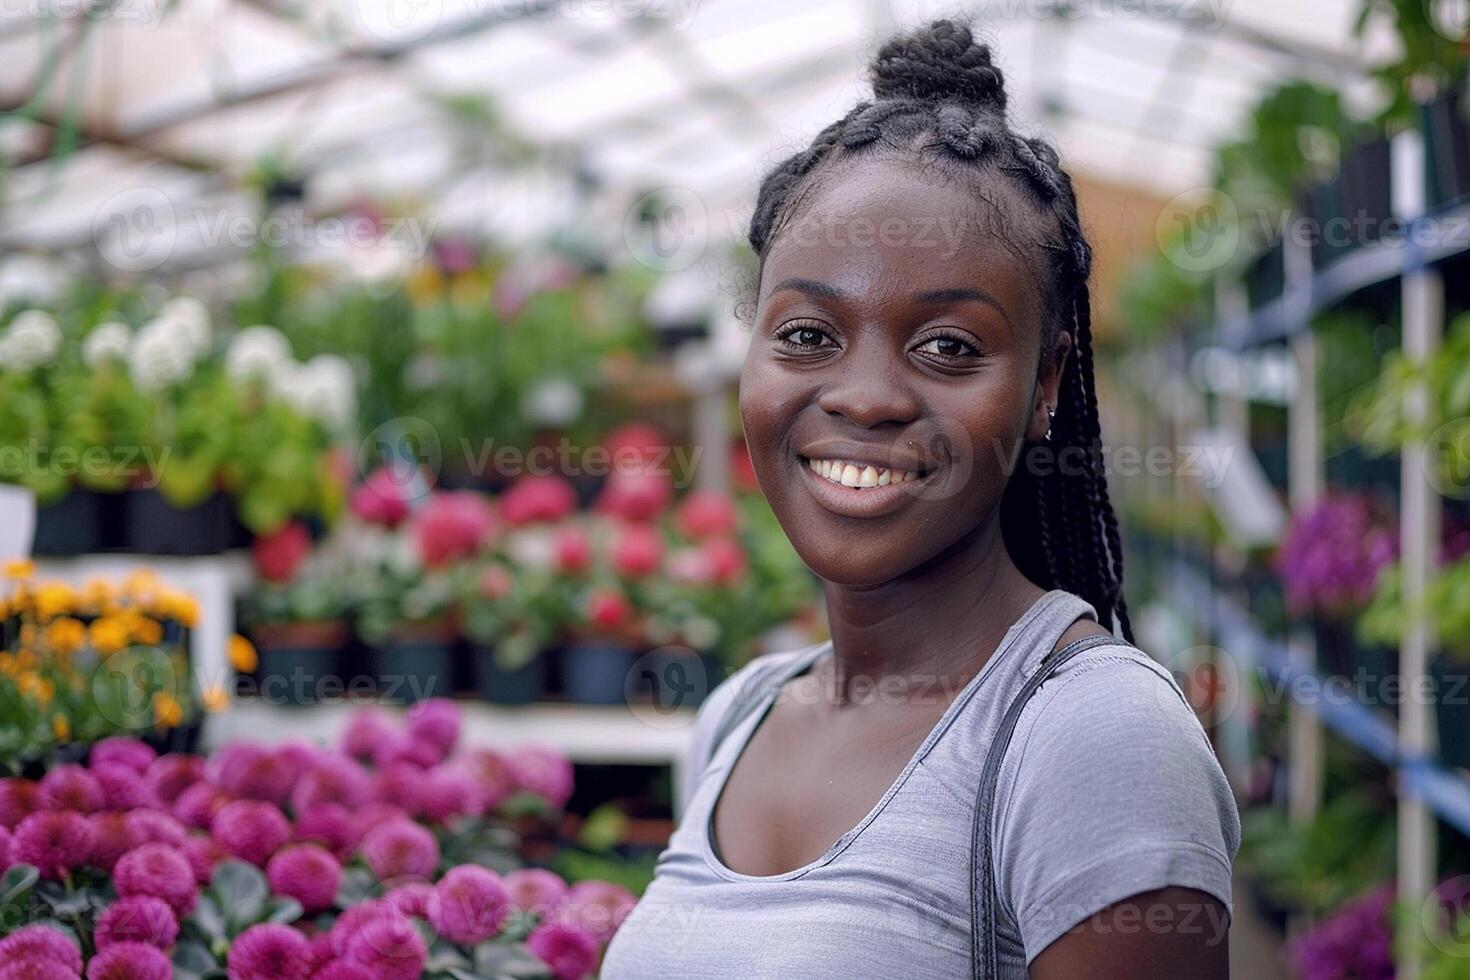 noir affaires femme dans une jardin centre entouré par verdure photo